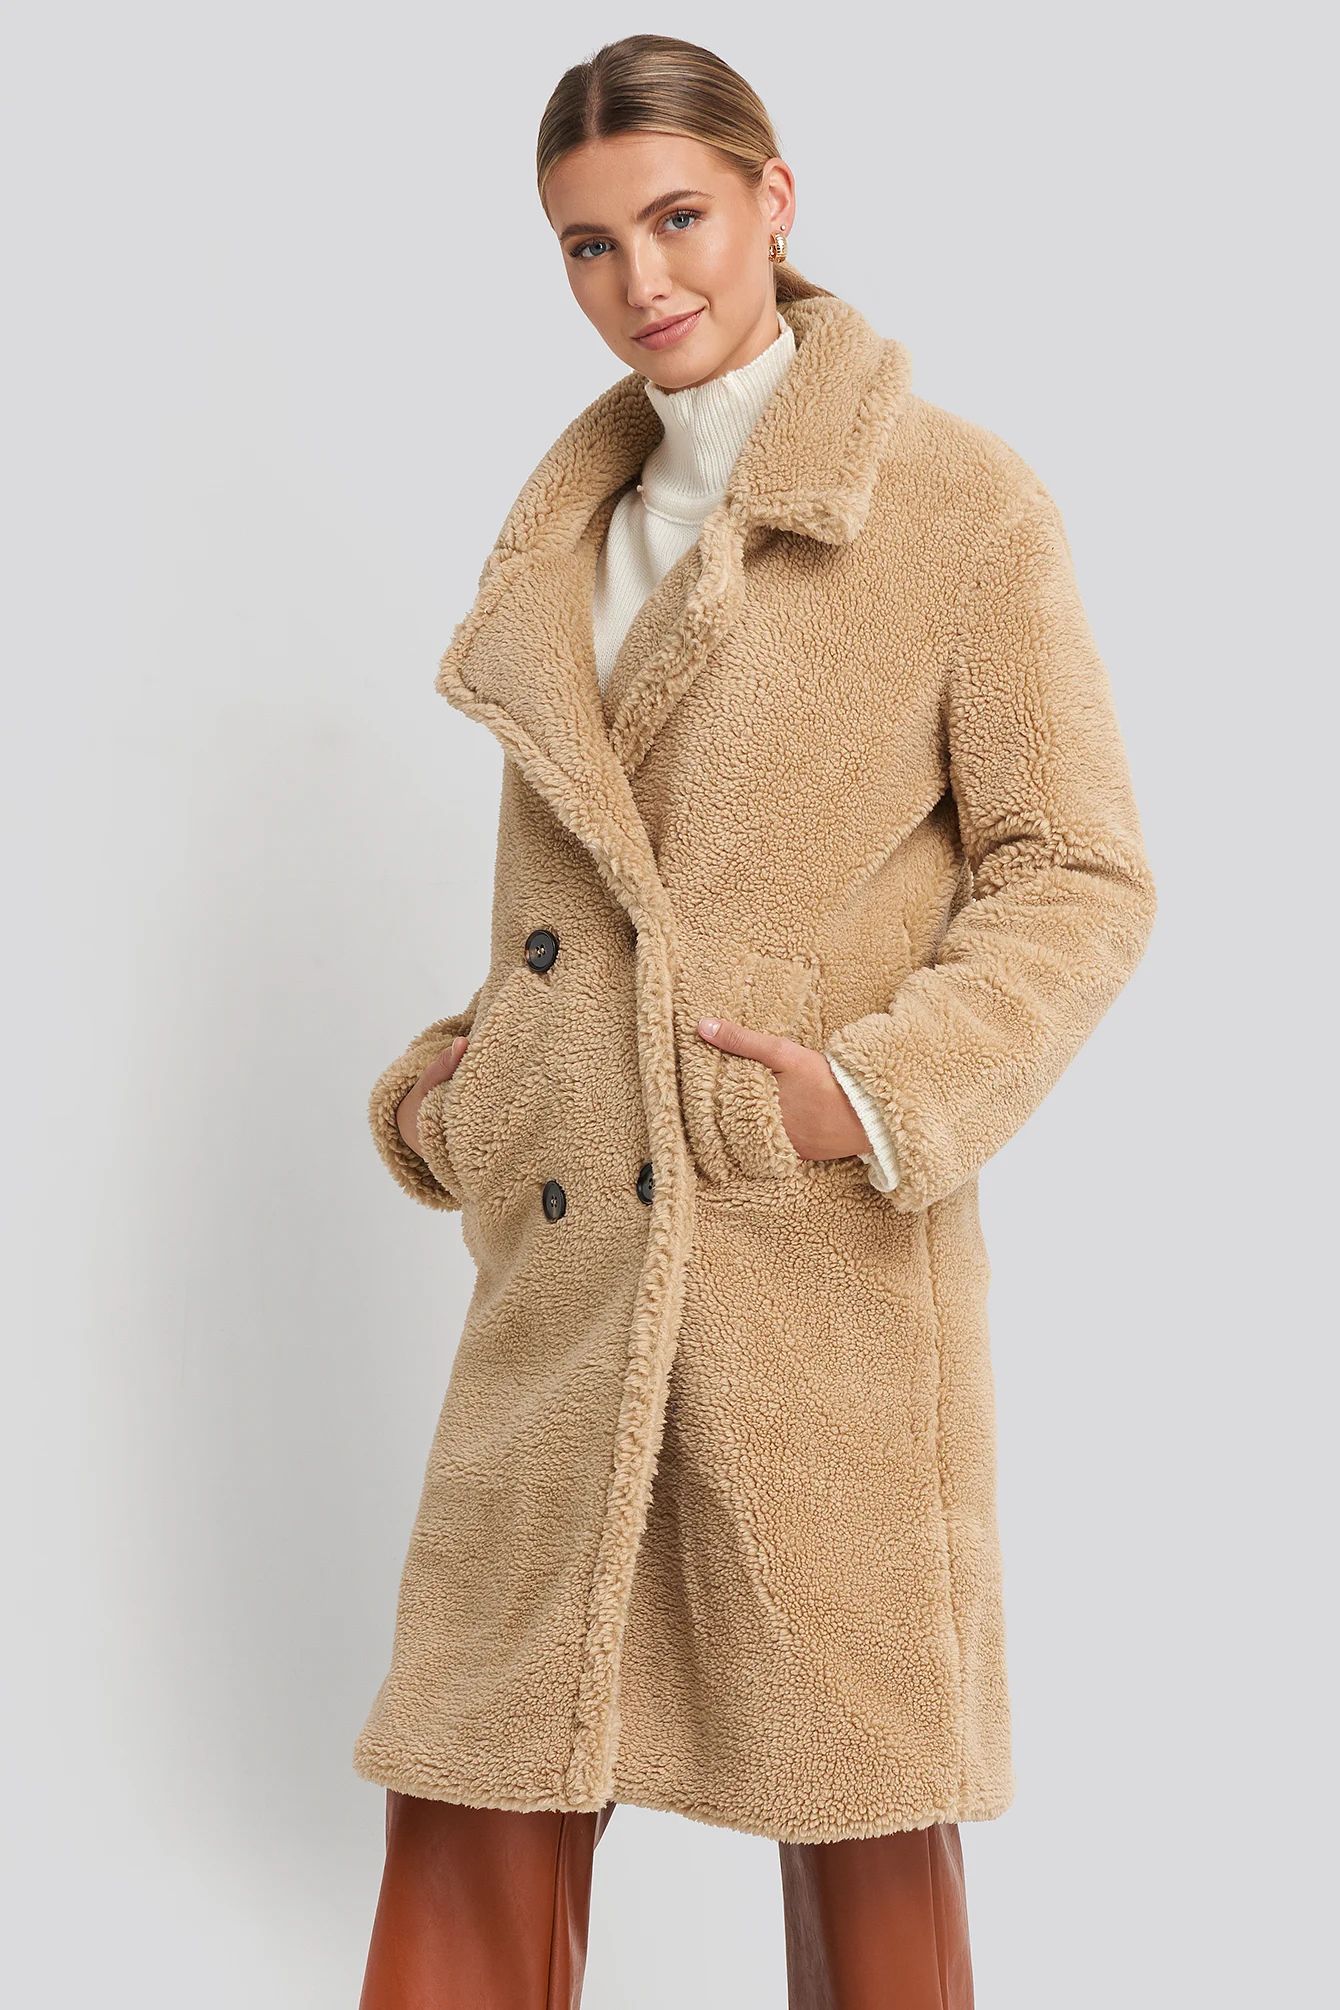 Long Teddy Coat Beige | NA-KD DE, AT, CH